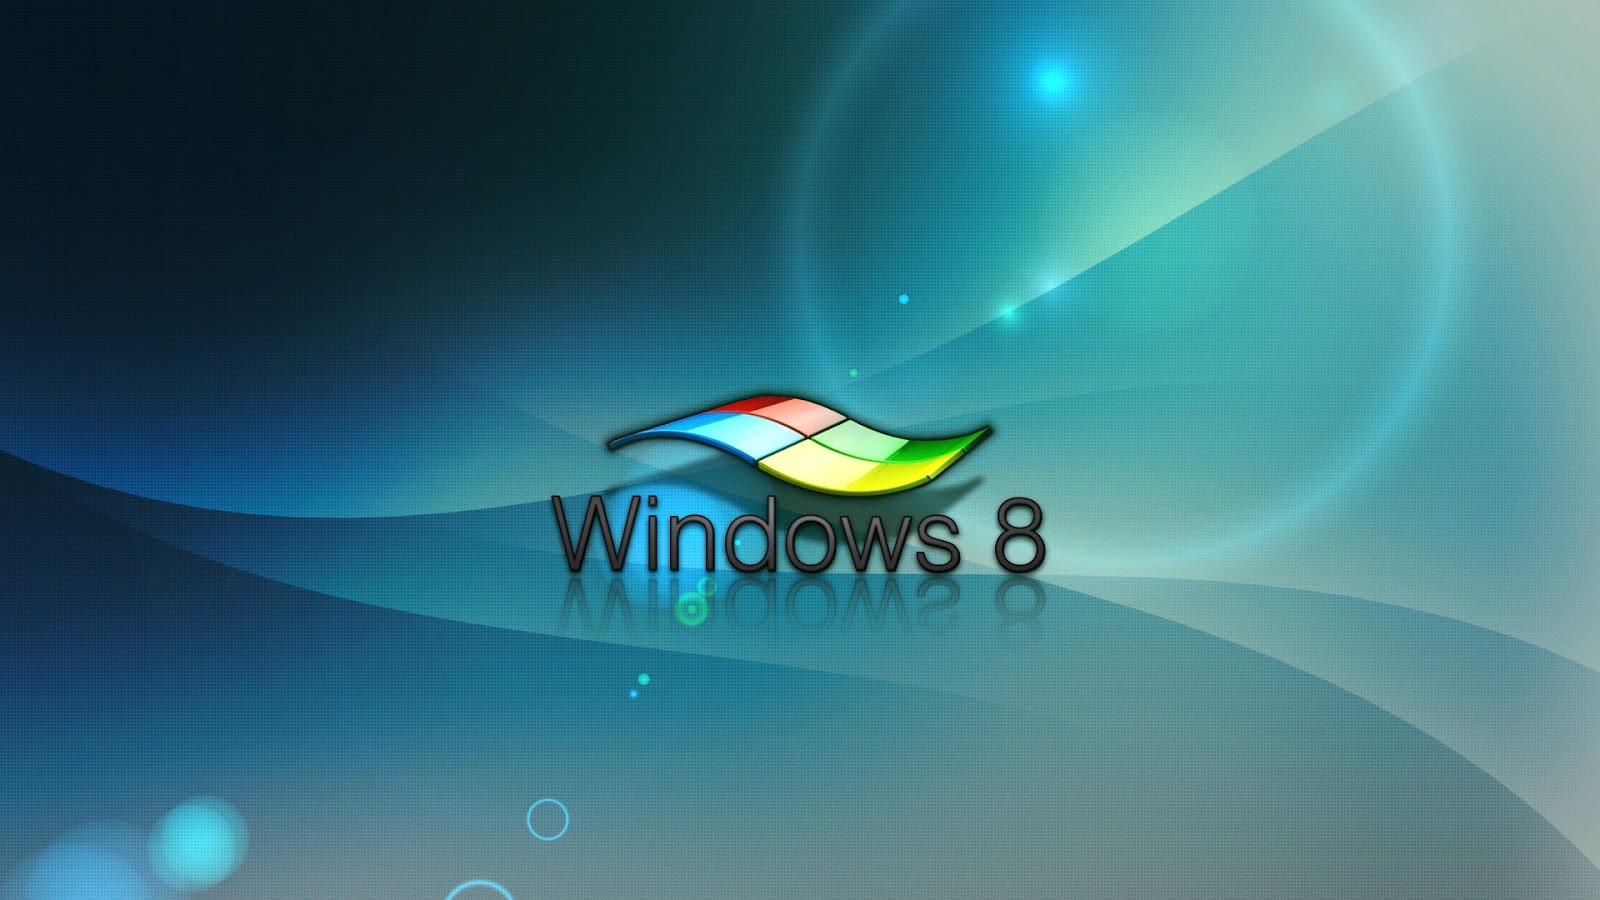 Windows 8 Hd 1080 Wallpaper Blue Hd Wallpaper Windows in Blue